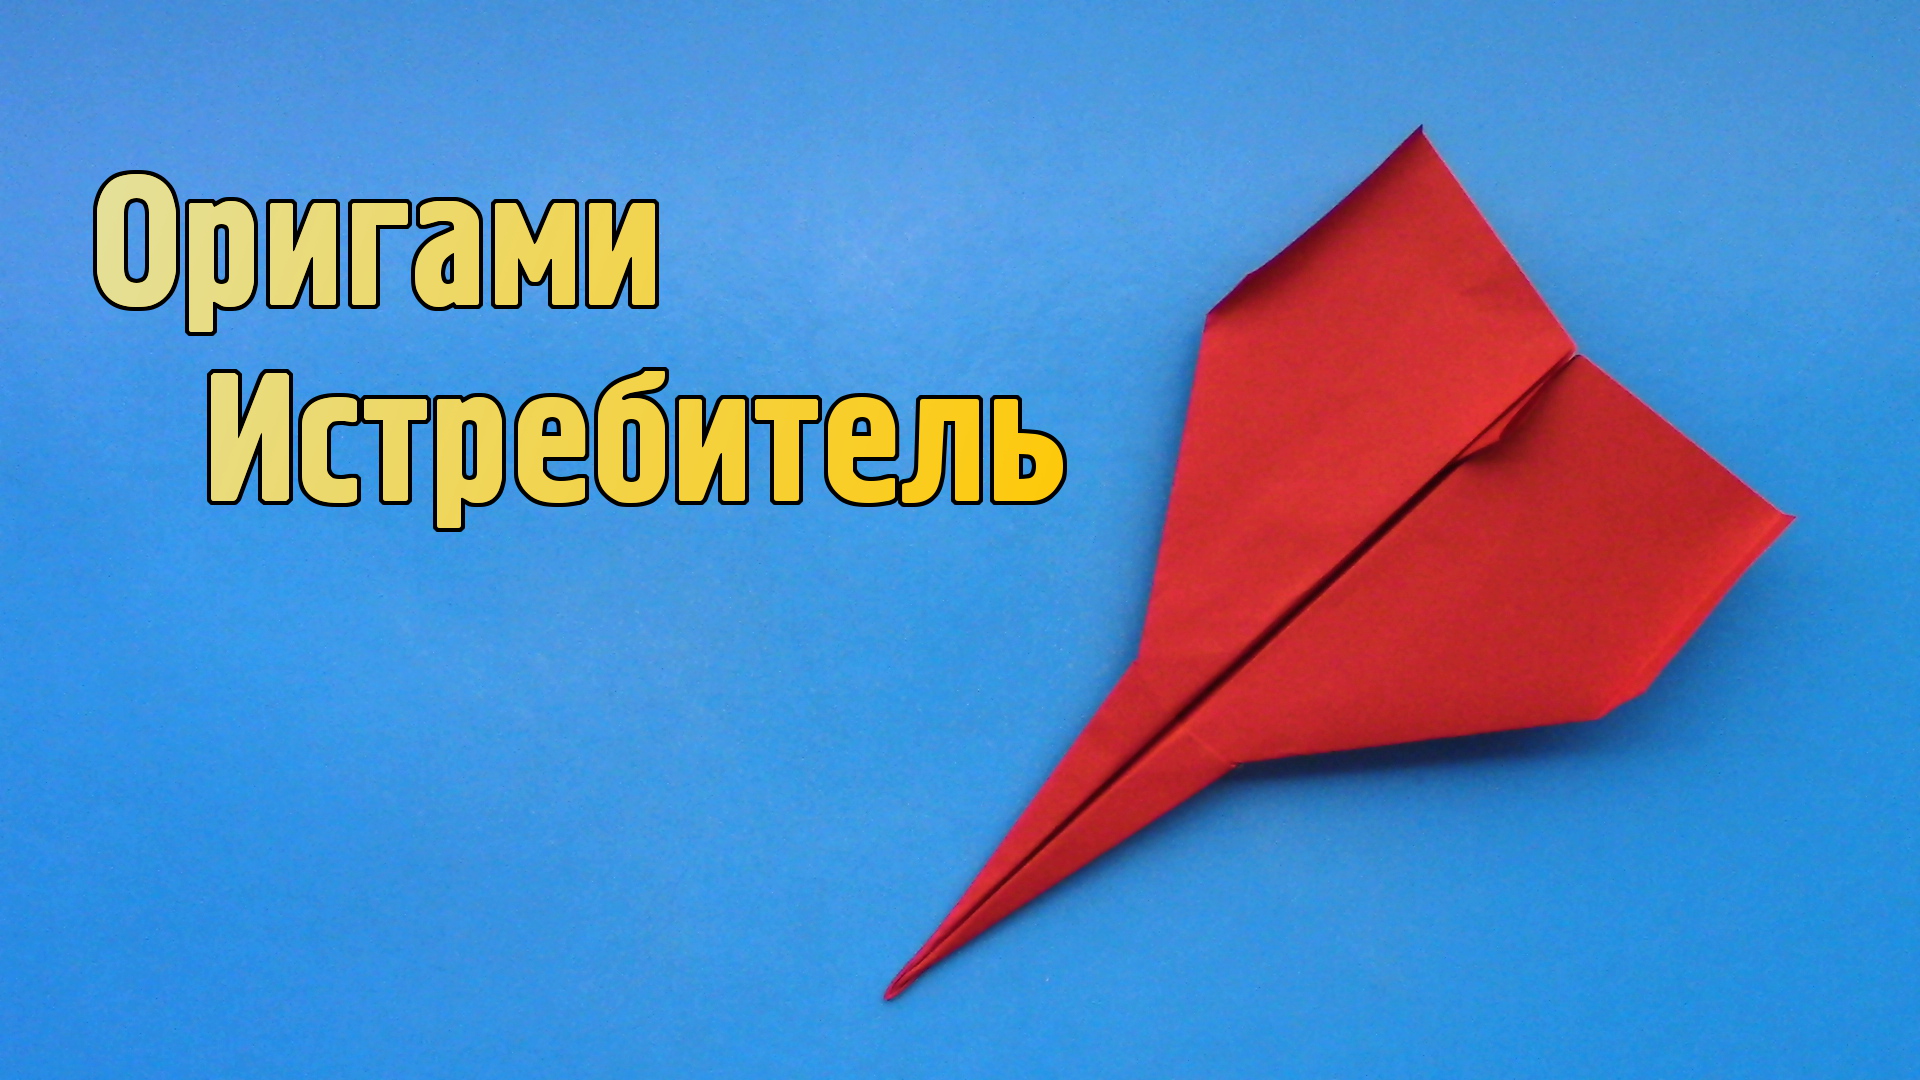 Как сделать Истребитель из бумаги | Оригами Самолет МиГ-29 для детей | Летающий Бумажный Самолетик